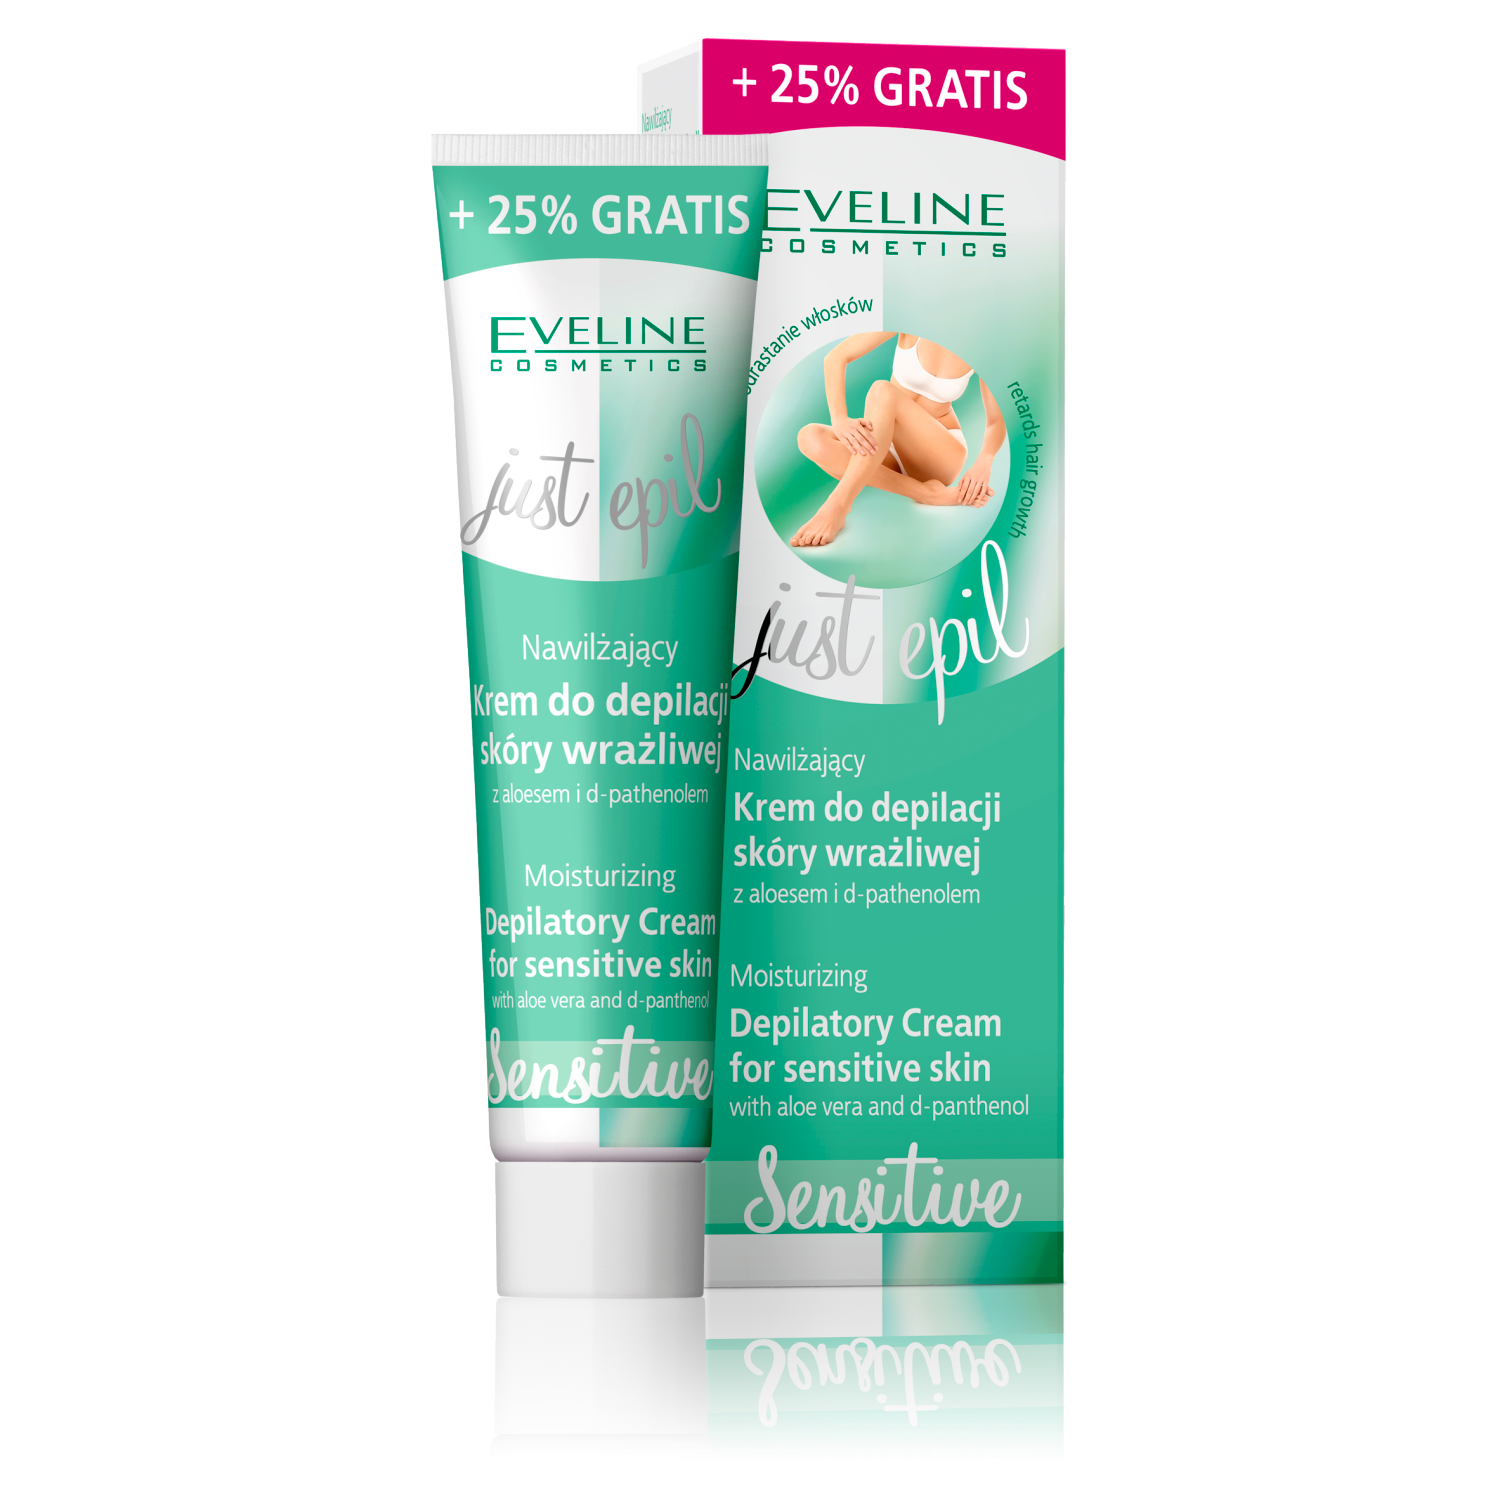 Eveline Cosmetics Just epil увлажняющий крем для депиляции чувствительной кожи, 125 мл